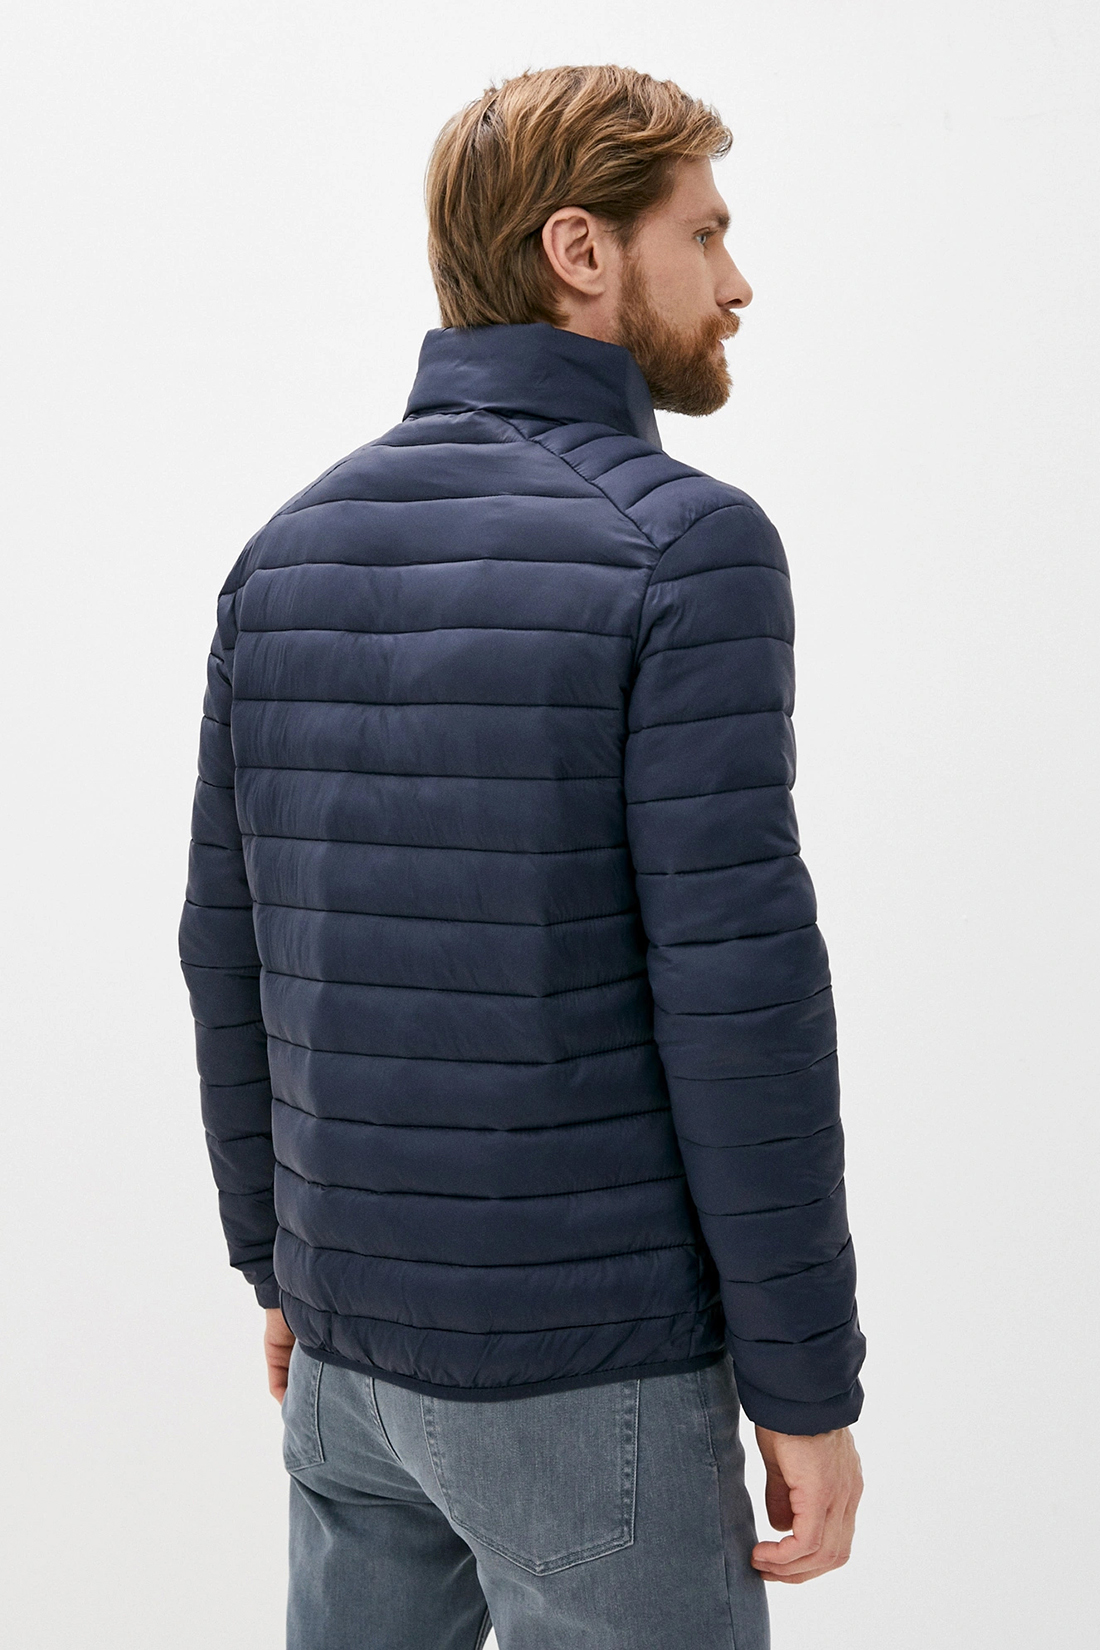 Куртка (Эко пух) (арт. baon B540520), размер XL, цвет синий Куртка (Эко пух) (арт. baon B540520) - фото 2